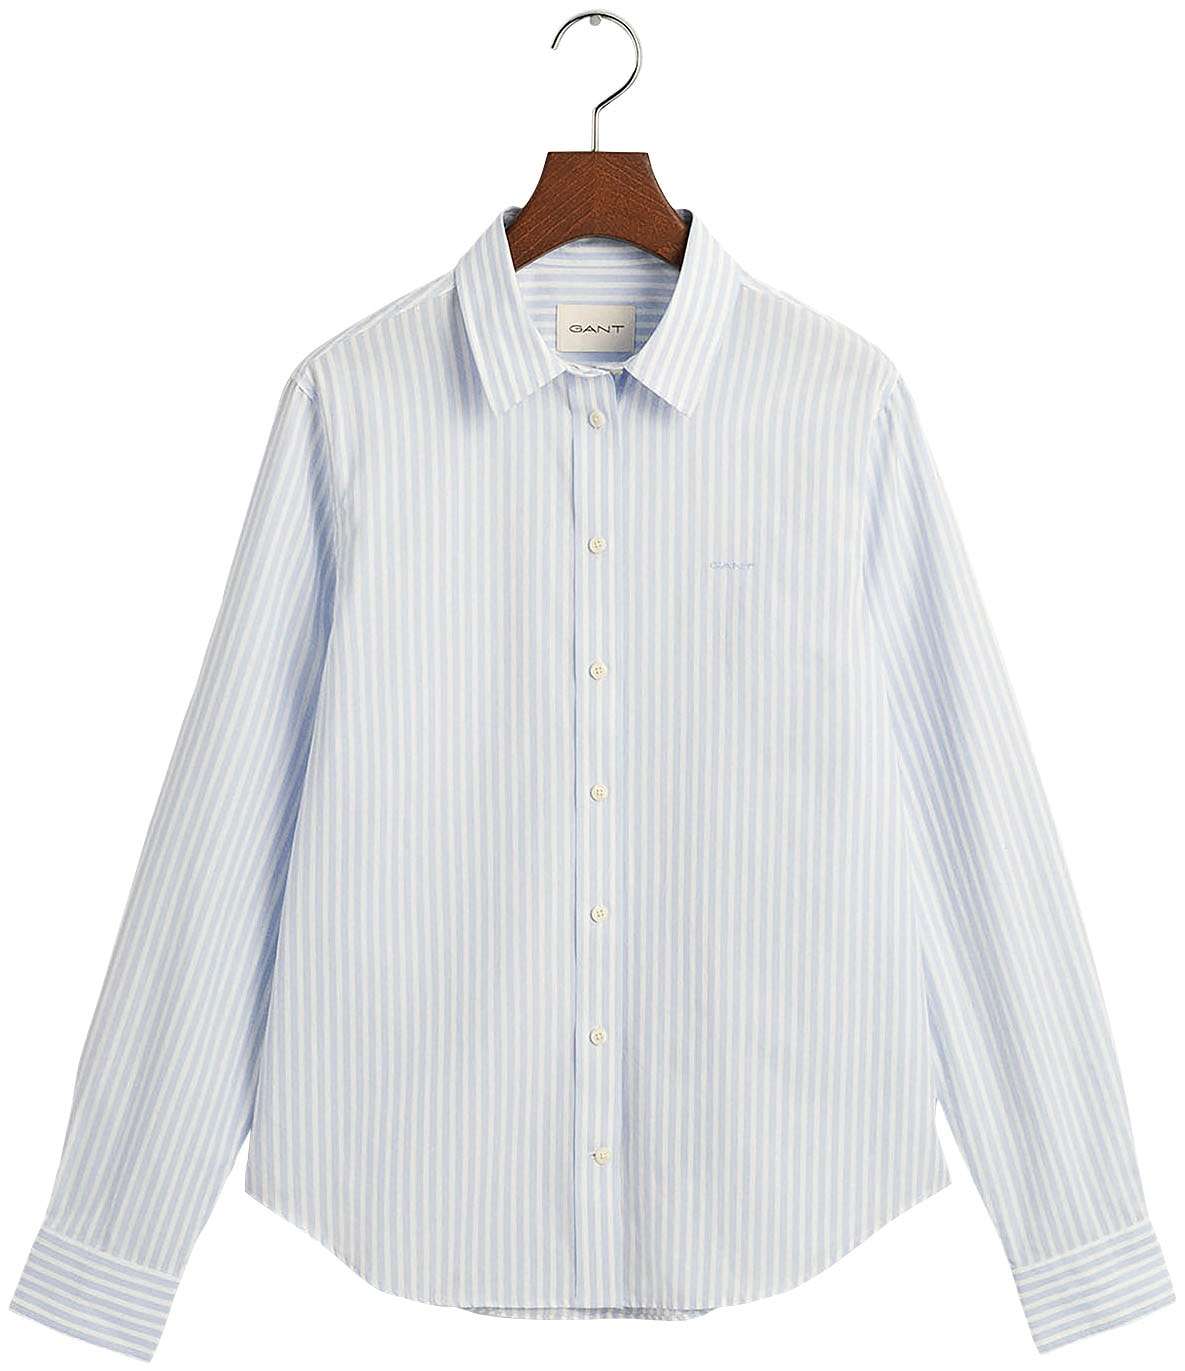 Блузка-рубашка с небольшой вышивкой логотипа на груди